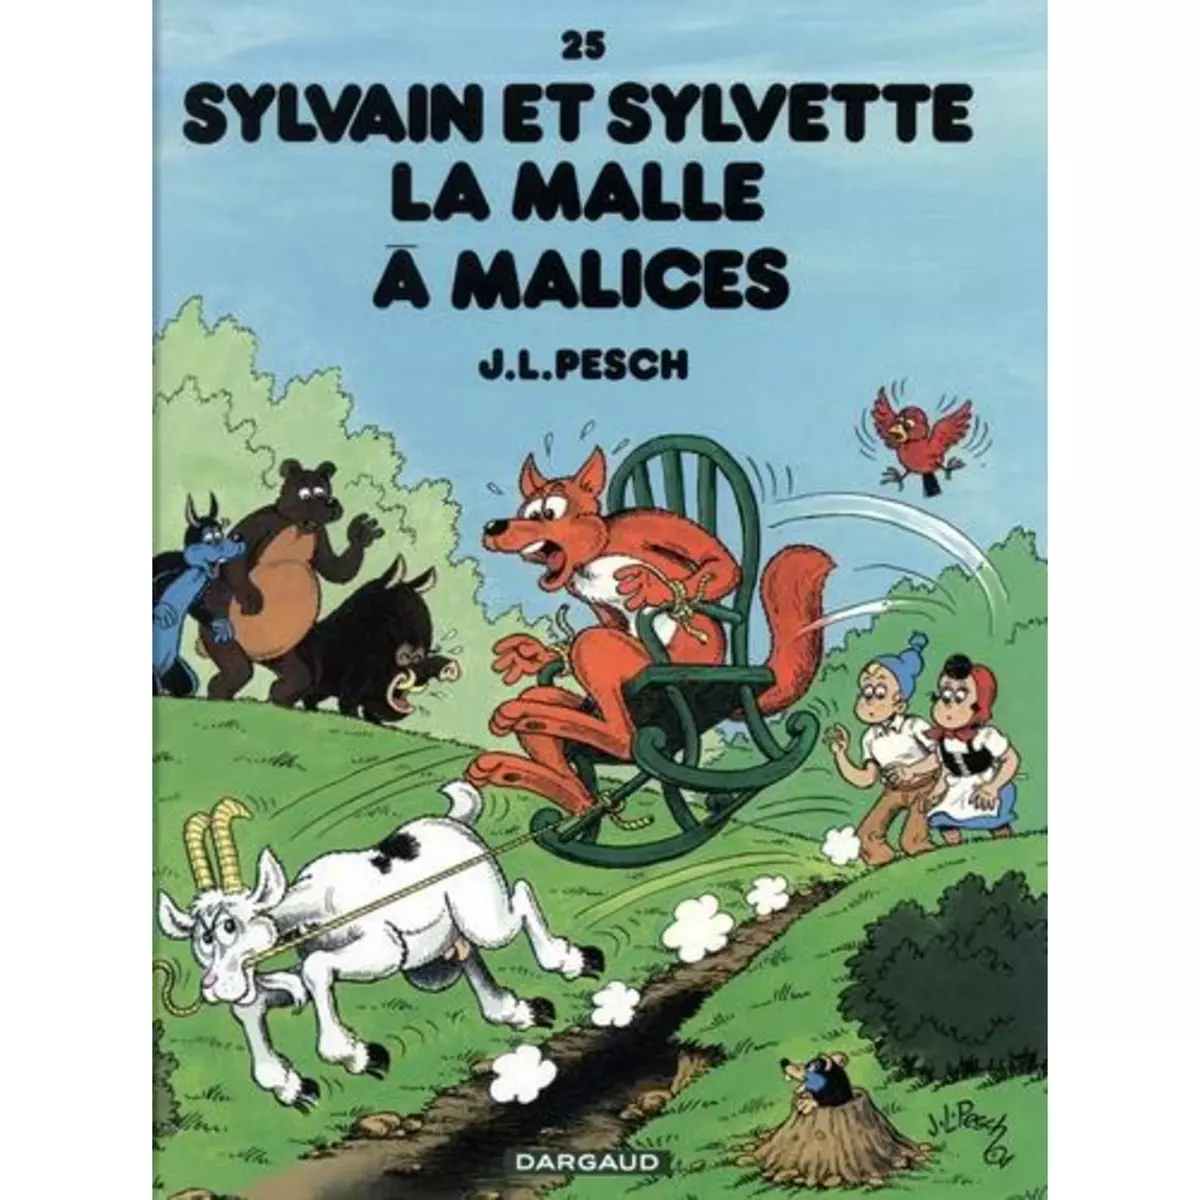  SYLVAIN ET SYLVETTE TOME 25 : LA MALLE A MALICES, Pesch Jean-Louis